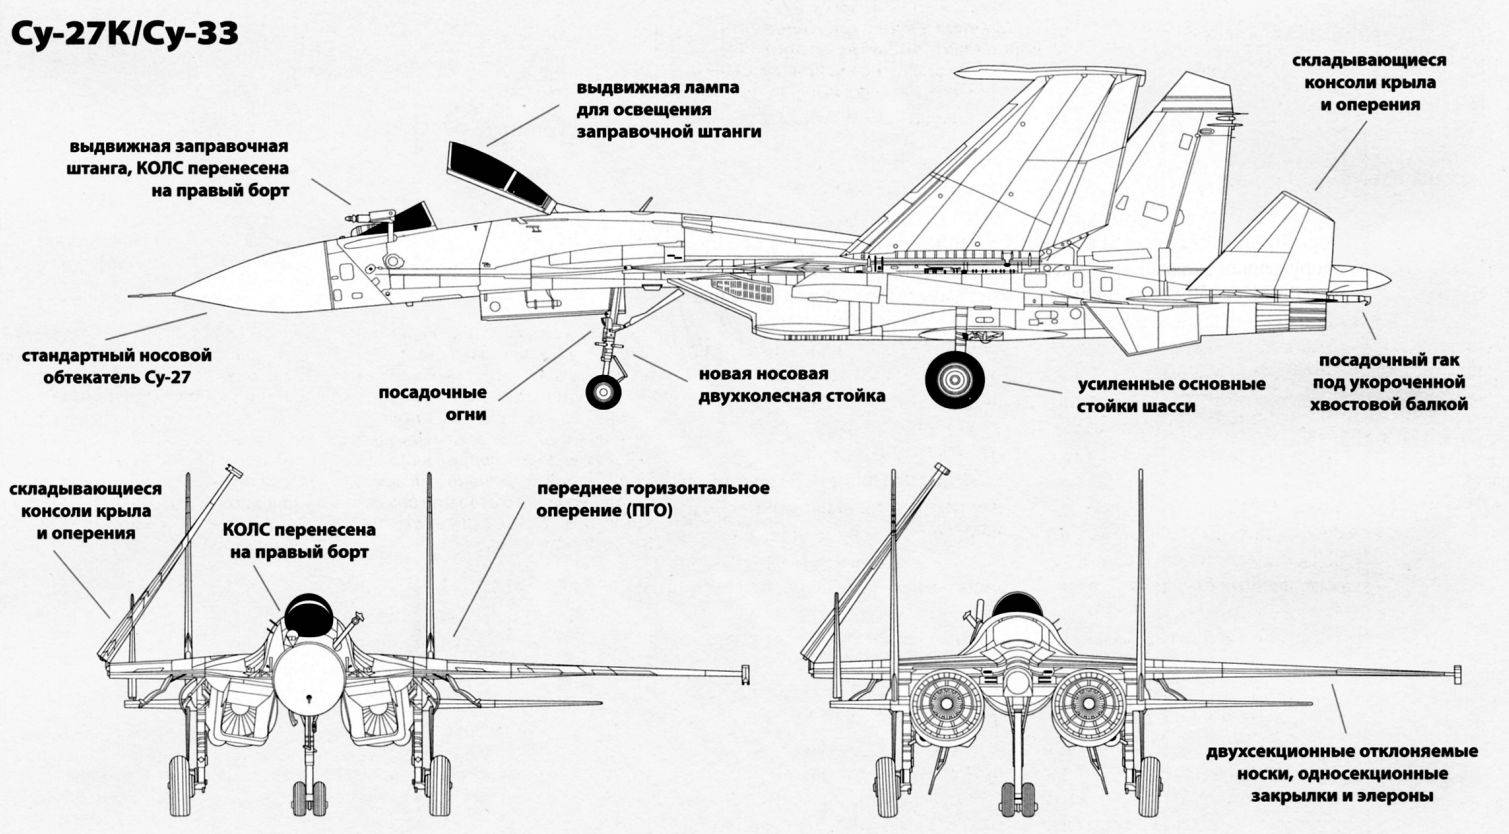 Многоцелевой истребитель су-27 (ссср/россия)